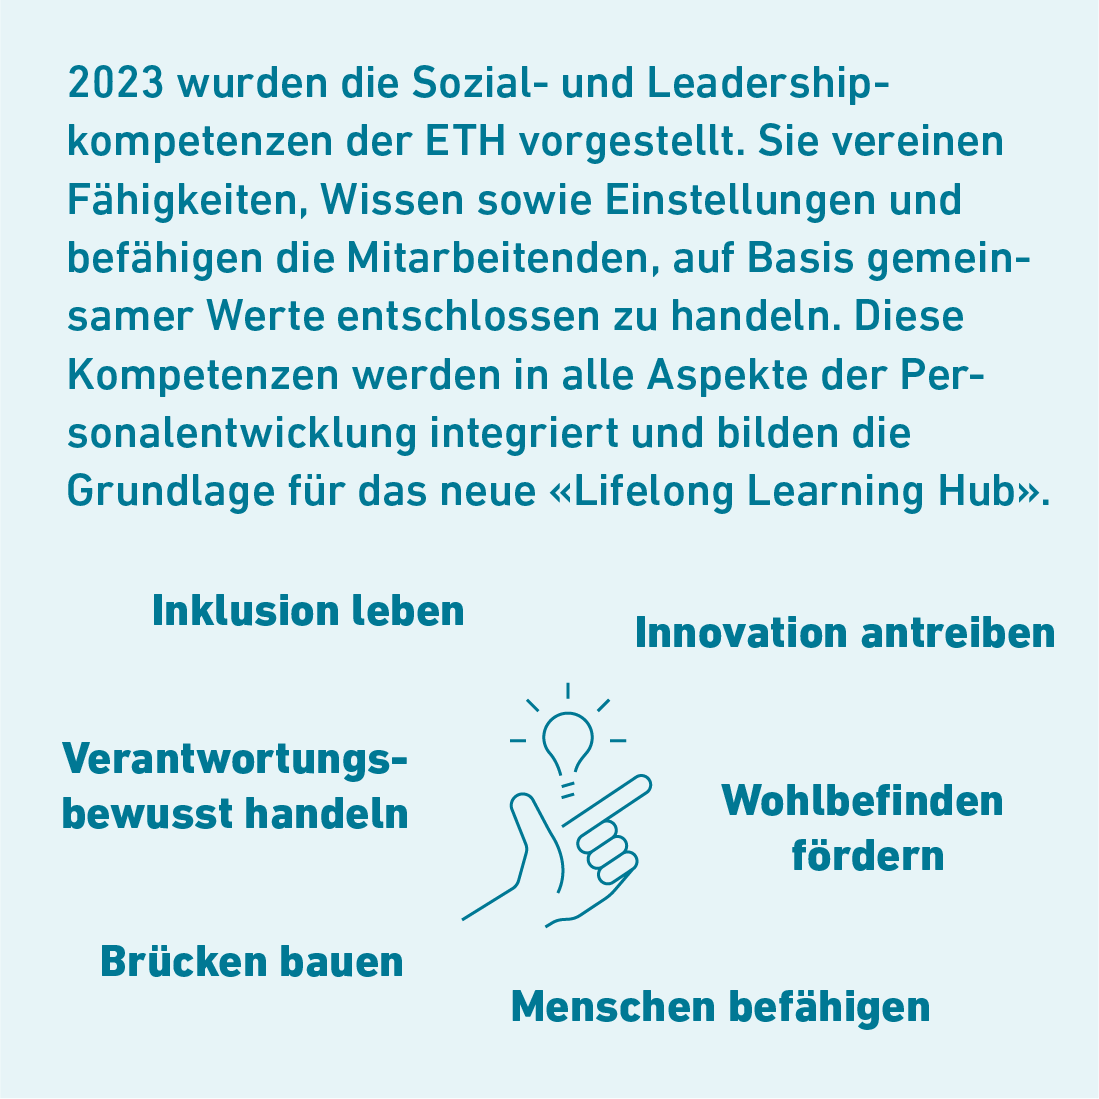 2023 wurden die Sozial- und Leadershipkompetenzen der ETH vorgestellt. Sie vereinen Fähigkeiten, Wissen sowie Einstellungen und befähigen die Mitarbeitenden, auf Basis gemeinsamer Werte entschlossen zu handeln. Diese Kompetenzen werden in allen Aspekten der Personalentwicklung integriert und bilden die Grundlage für das neue "Lifelong Learning Hub".